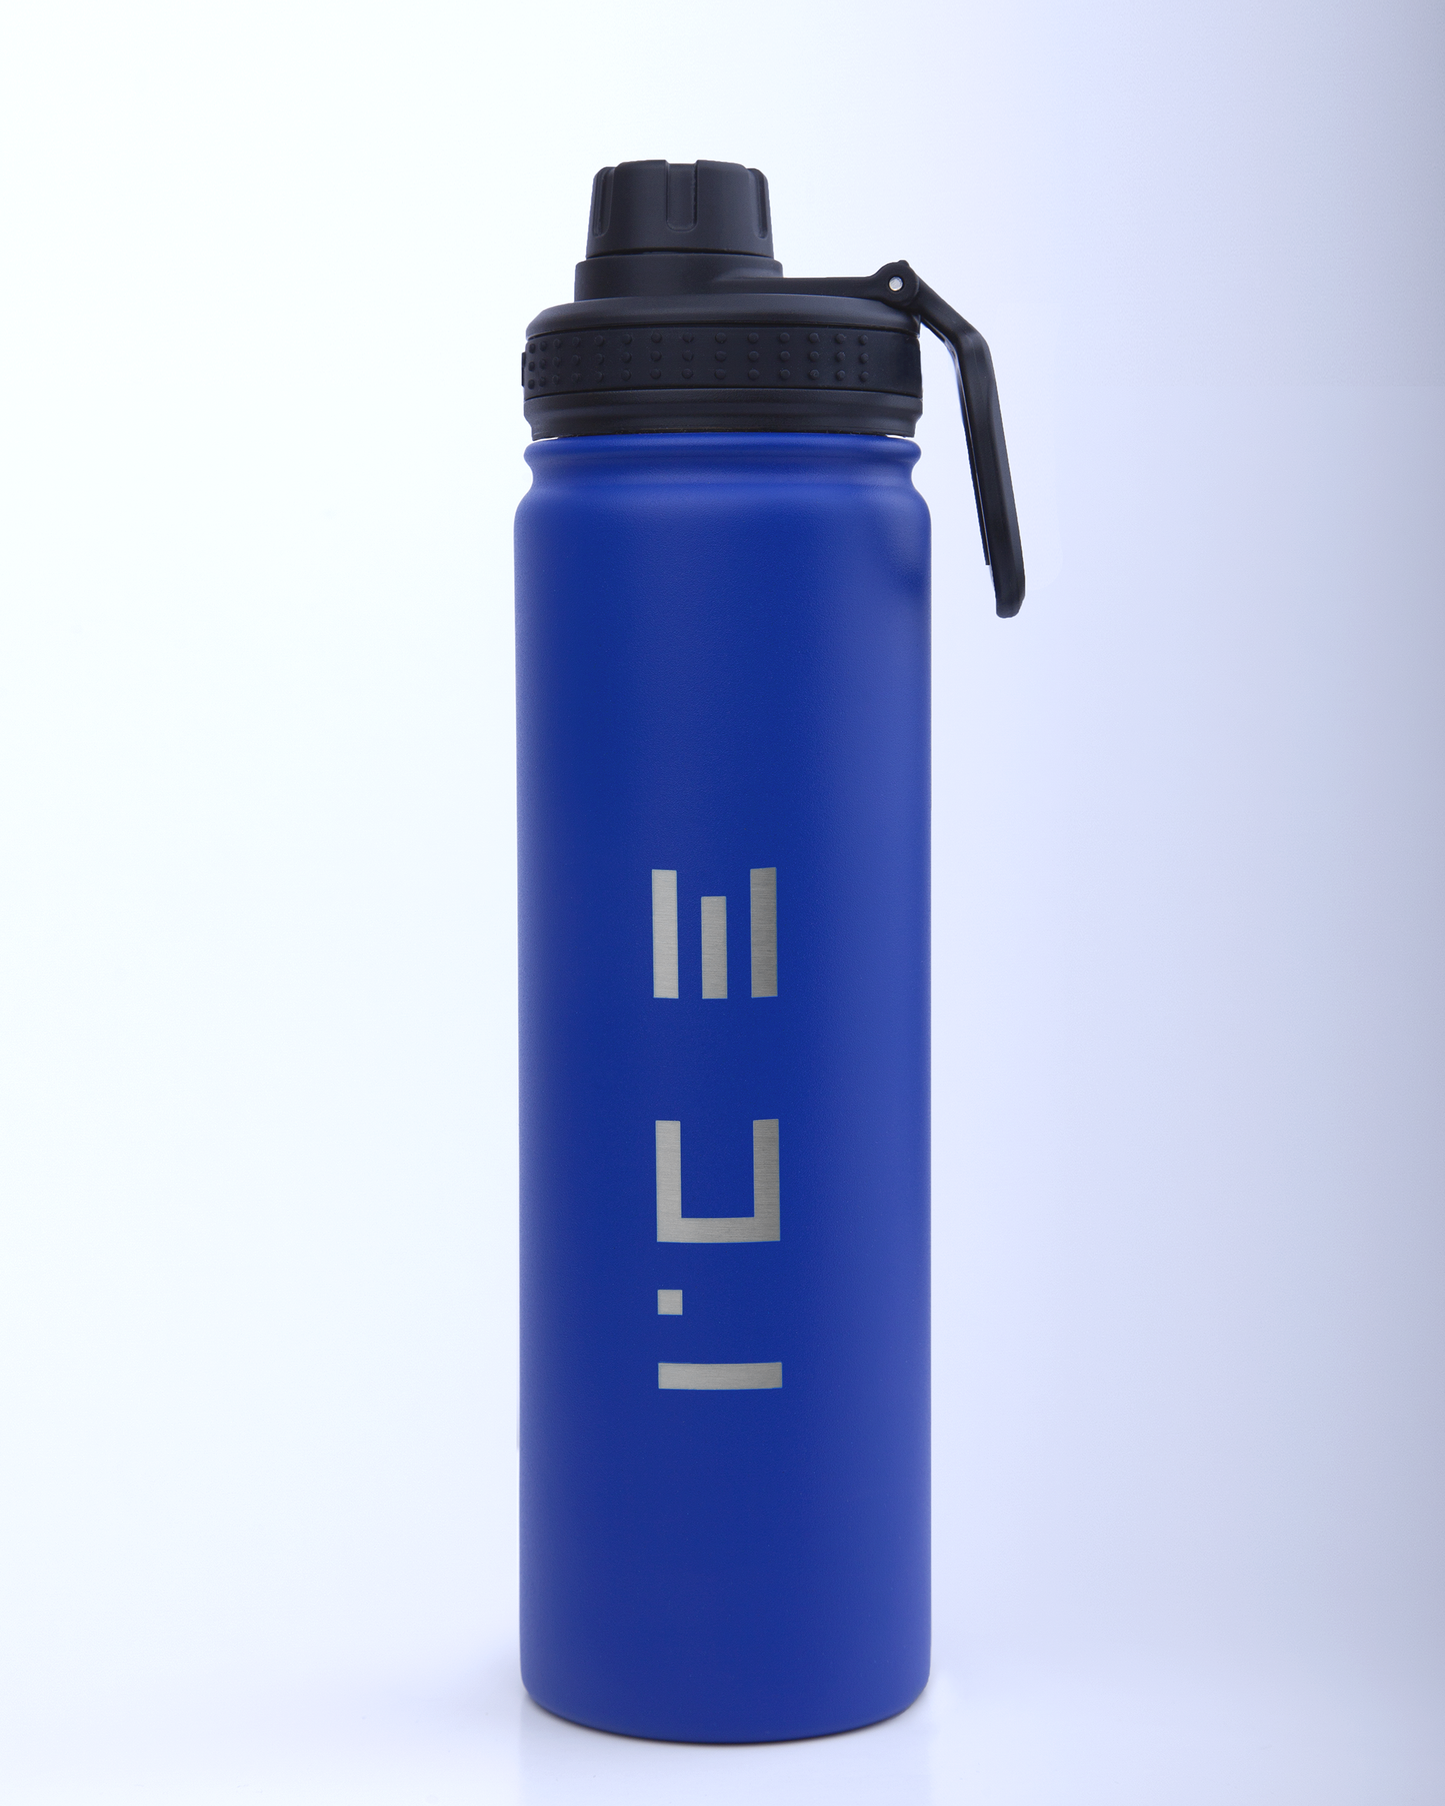 ICE Water Bottle in Blue - 64 oz